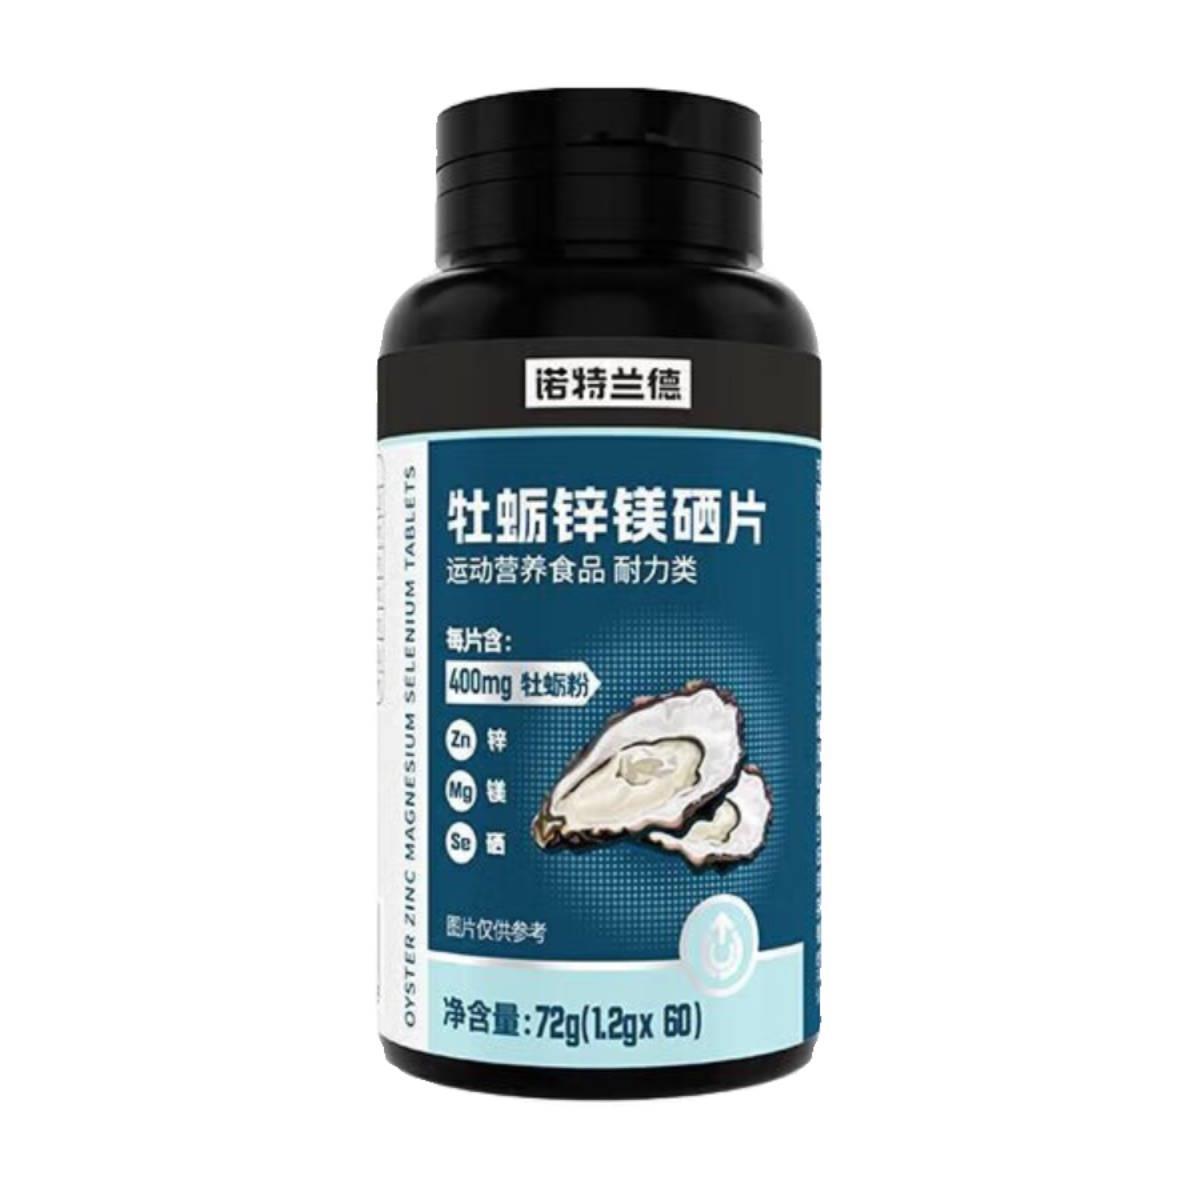 诺特兰德牡蛎锌镁硒片可搭男性Bvb1b2维生素营养活成人健身精运动